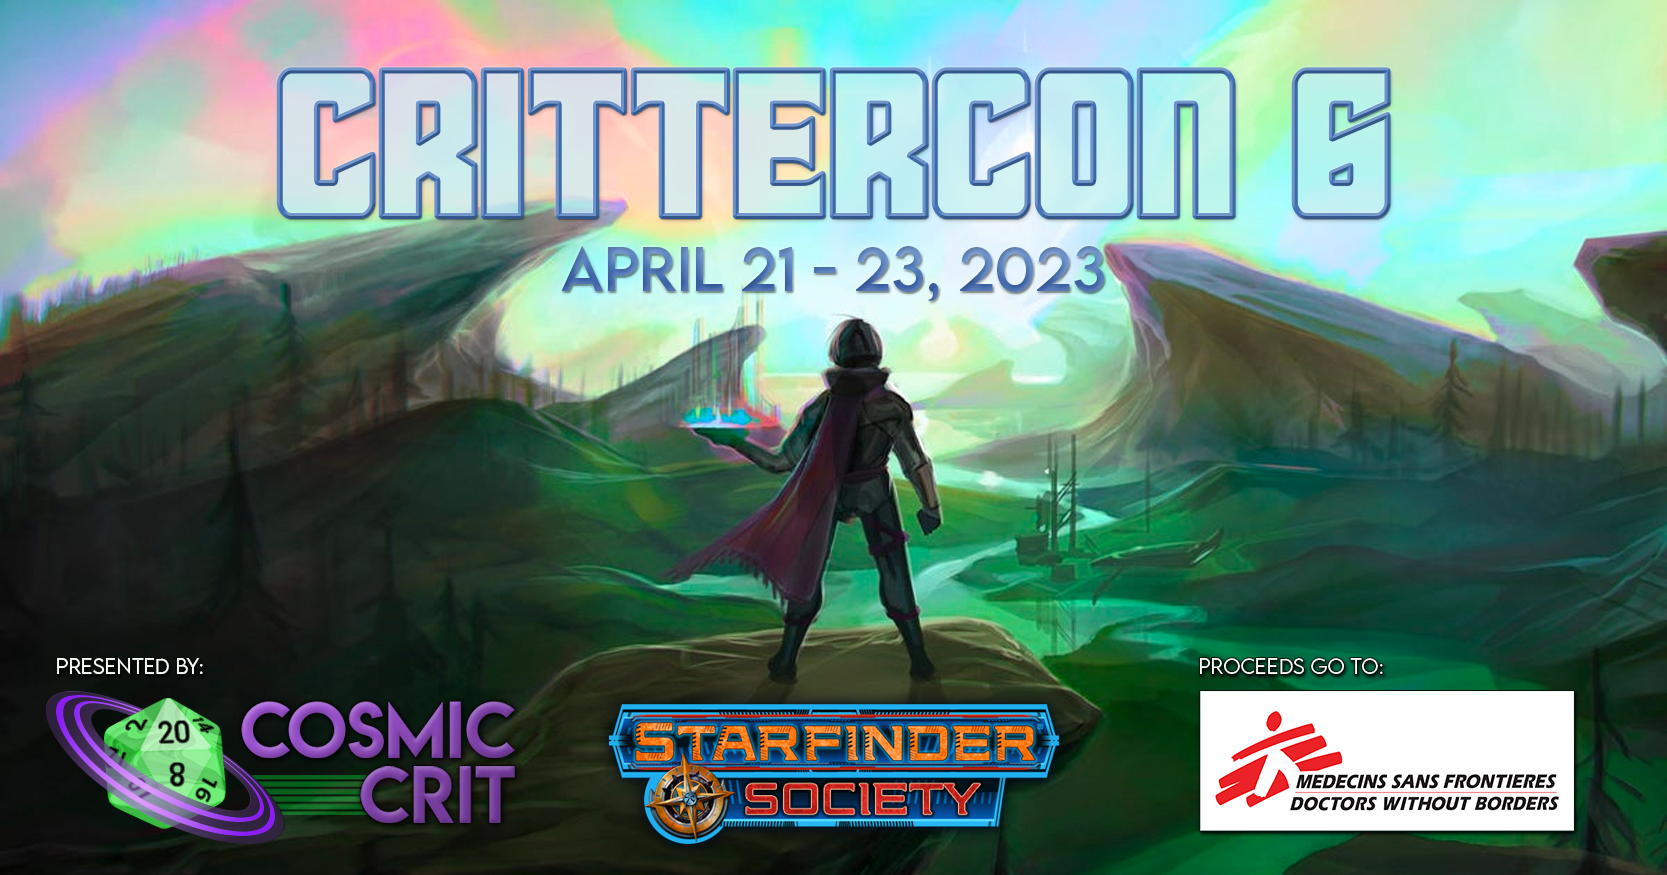 Crittercon 6 | April 21 - 23, 2023